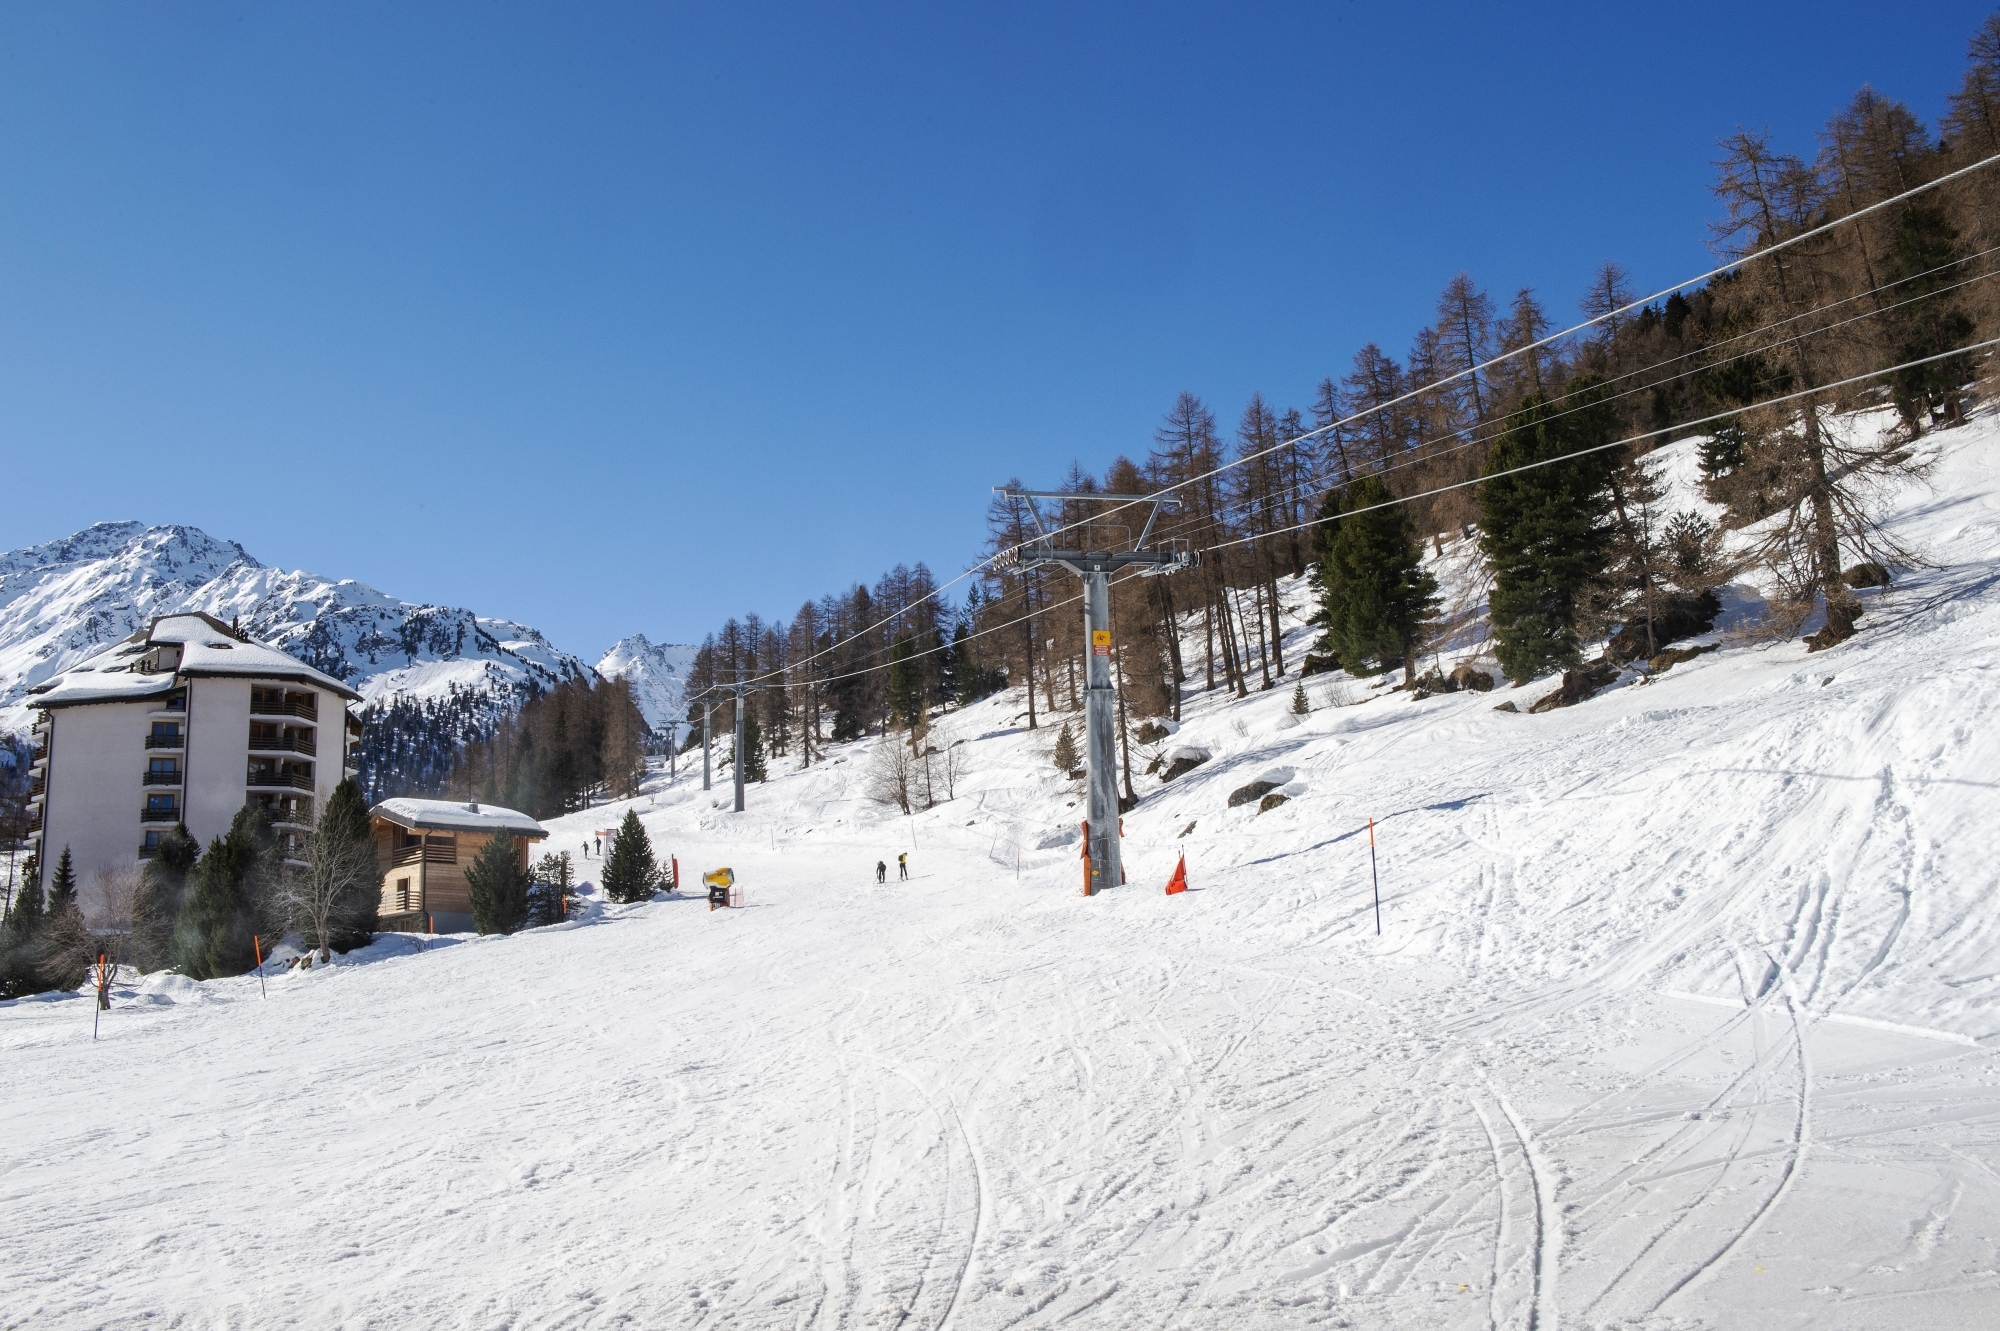 Neige et soleil, la saison était idéale jusqu'au 16 mars et la décision du Conseil fédéral de fermer les domaines skiables. (image d'illustration)